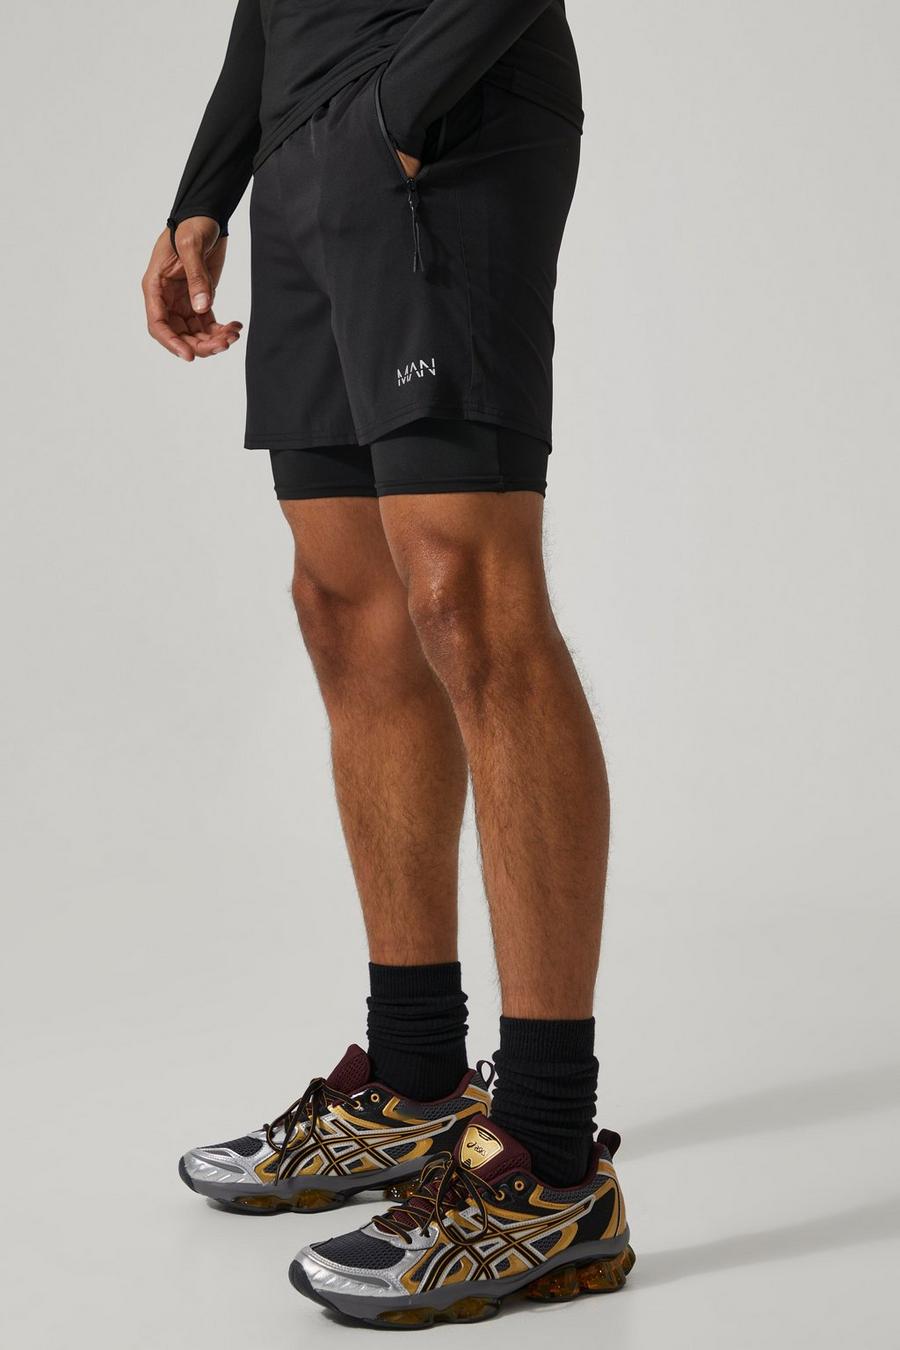 Man Active 2-in-1 Shorts, Black schwarz